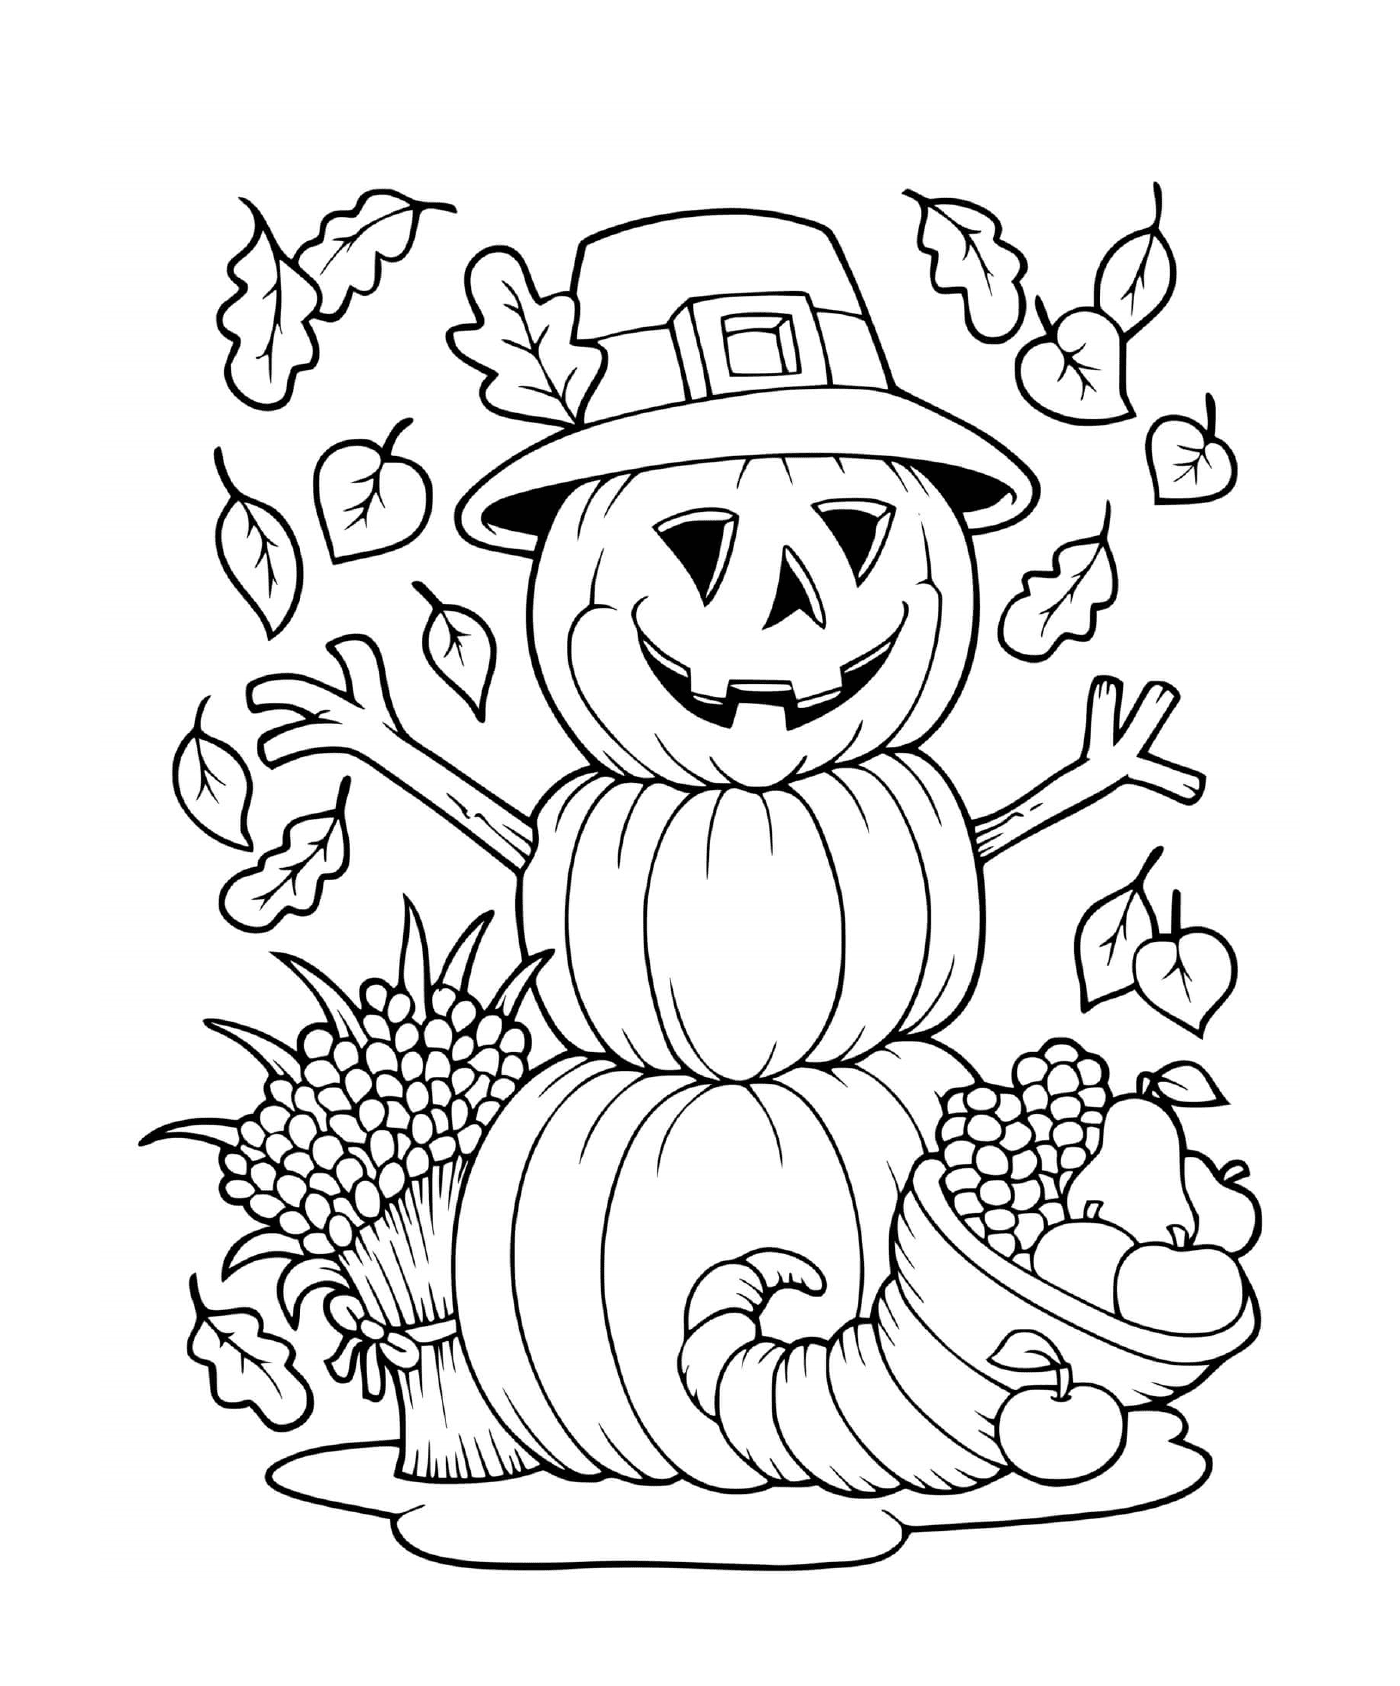  A pumpkin with a hat 